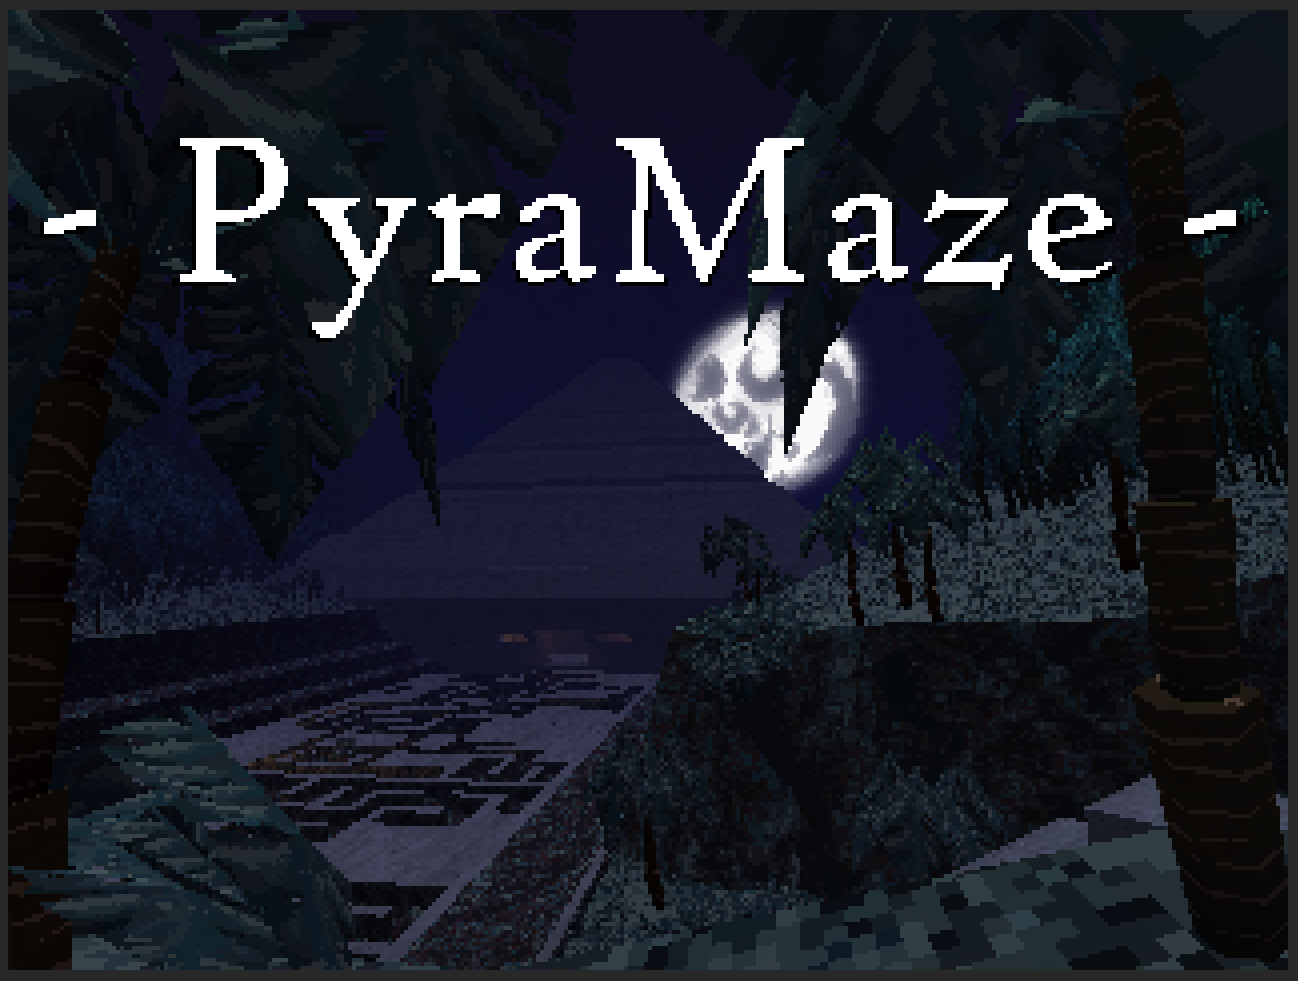 PyraMaze